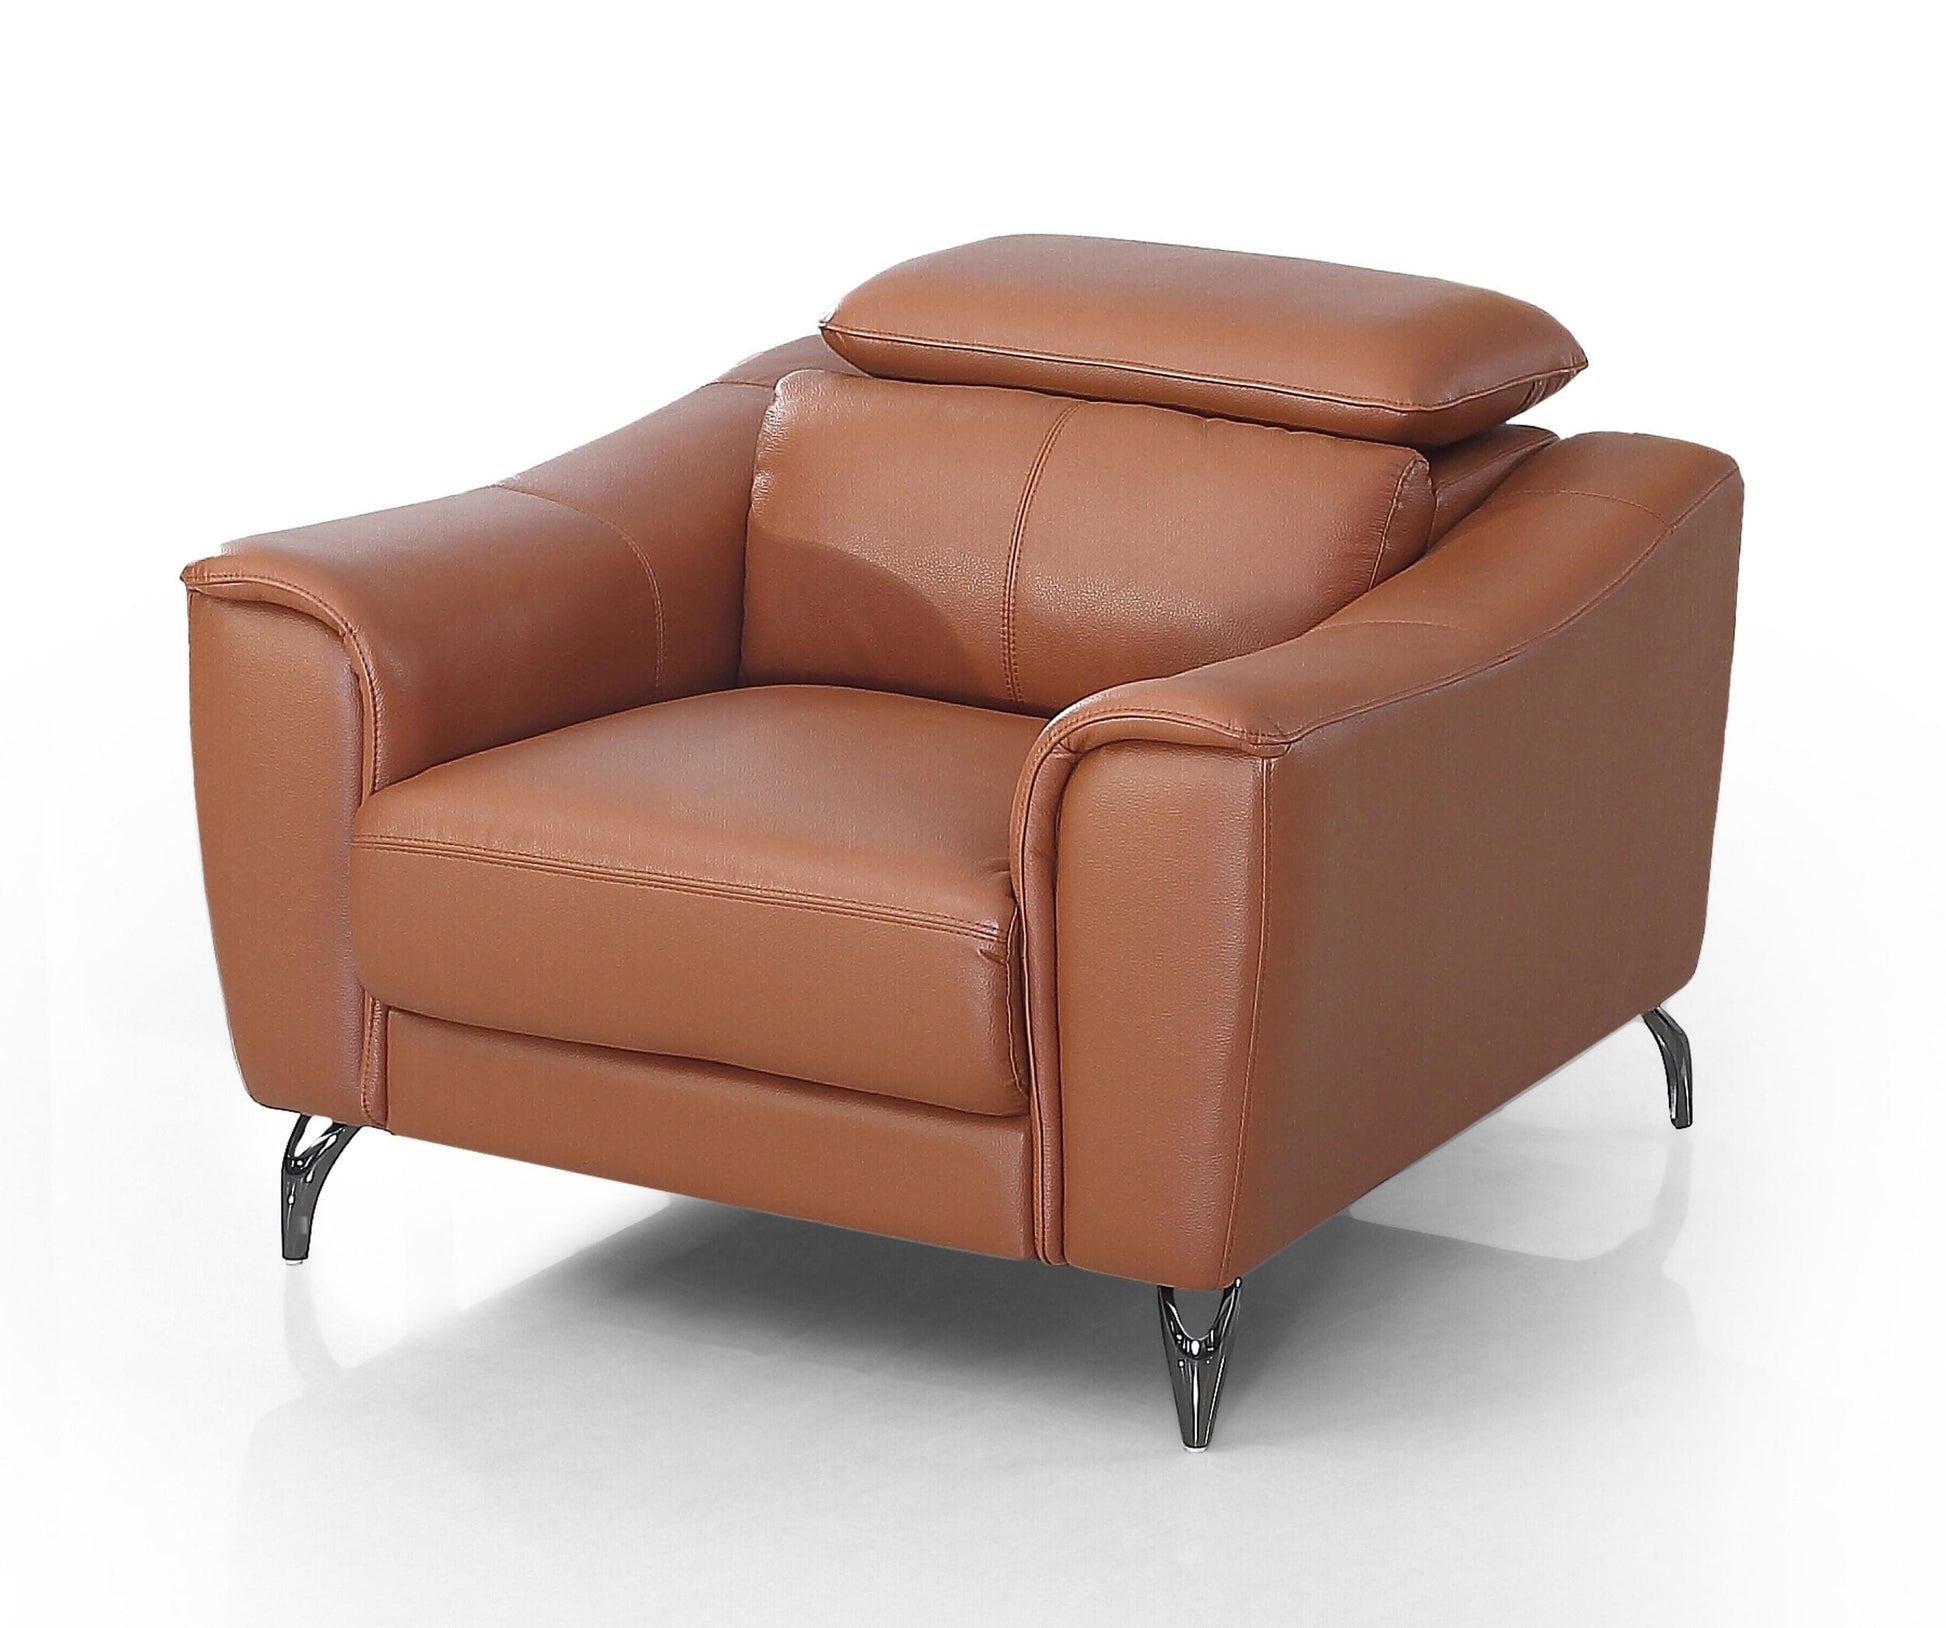 VIG Furniture Divani Casa Danis Cognac Leather Brown Chair